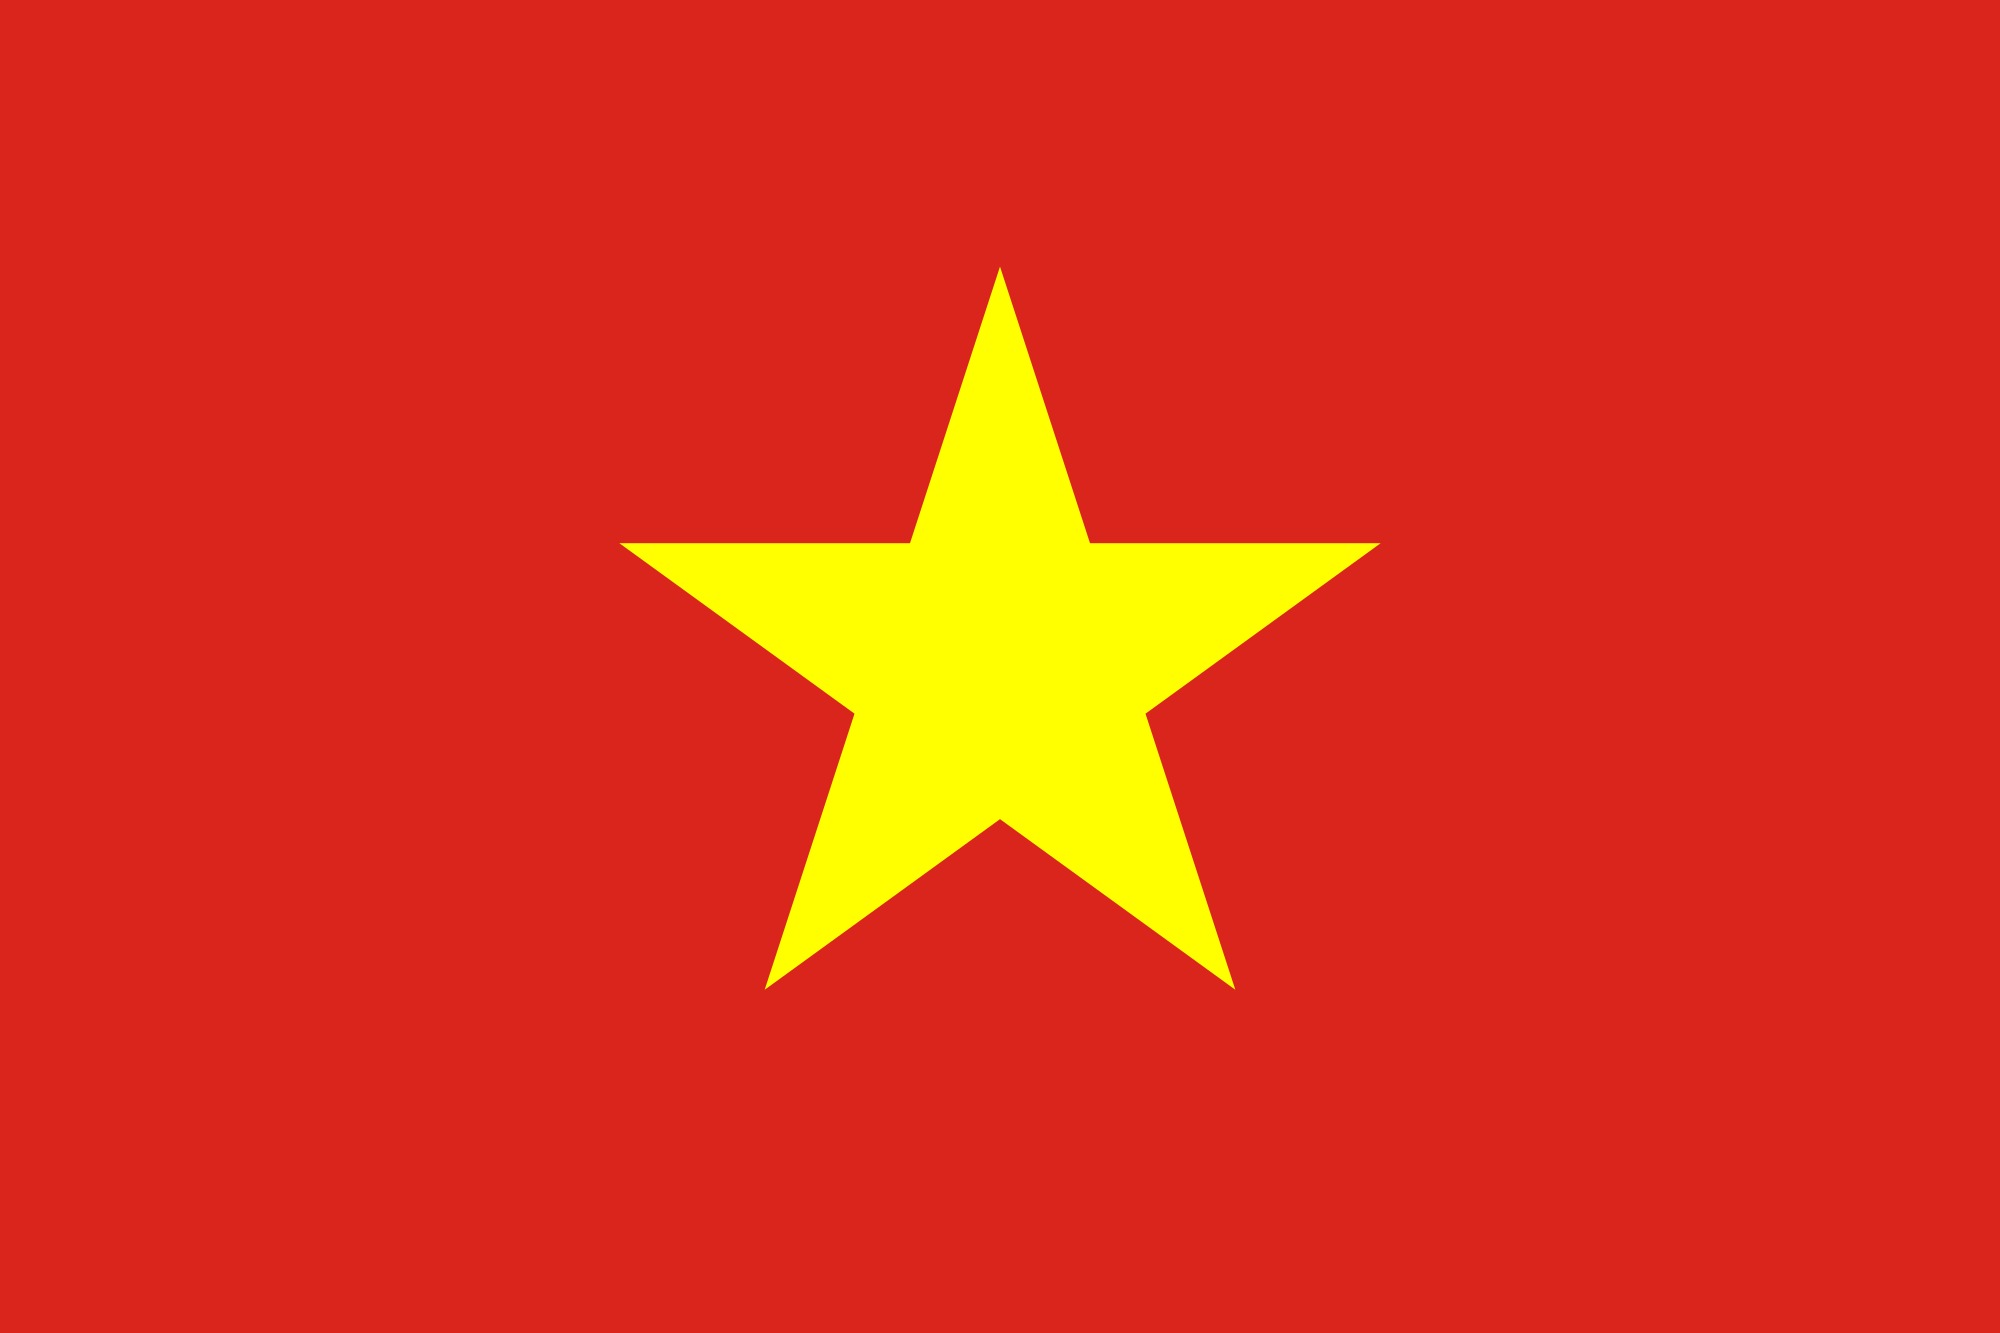 Ý nghĩa tượng trưng: Tượng trưng luôn nói lên điều gì đó quan trọng và sâu xa hơn bao giờ hết. Hãy cùng chúng tôi khám phá những hình ảnh đầy ý nghĩa về tượng trưng trong cuộc sống hàng ngày. Chúng sẽ giúp bạn cảm nhận sự phong phú và đa dạng của văn hoá và truyền thống Việt Nam.